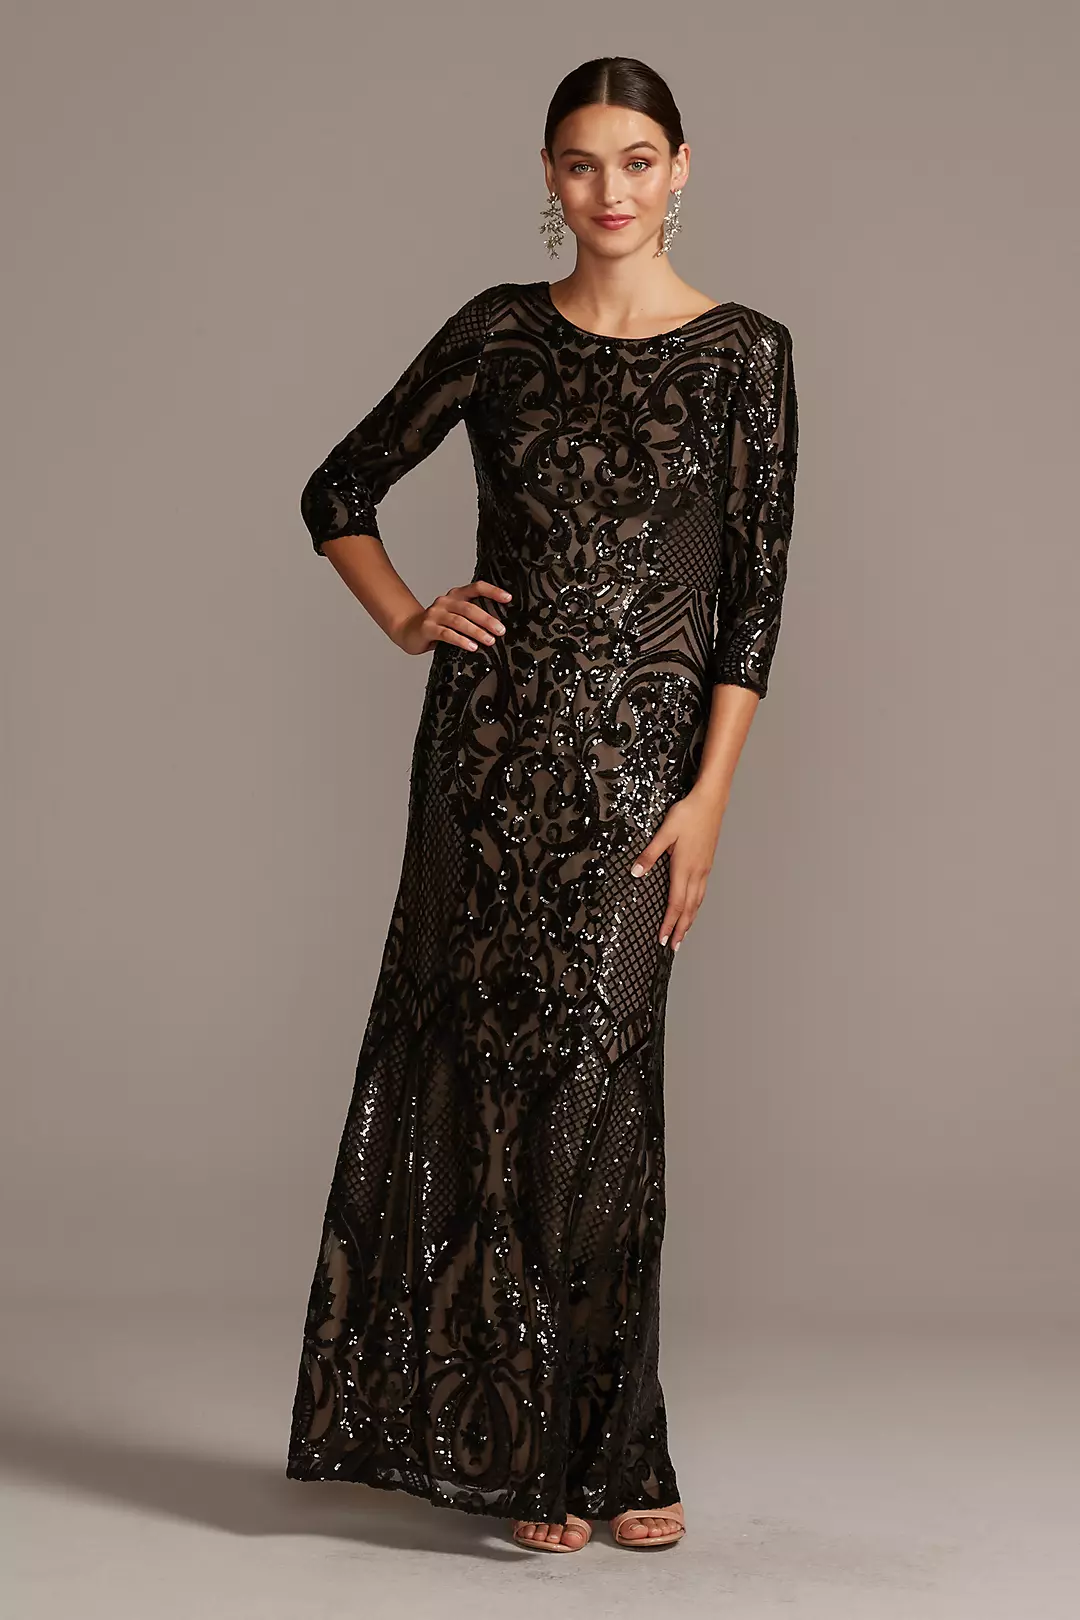 Sequin Brocade Embellished 3/4 Sleeve Dress Image